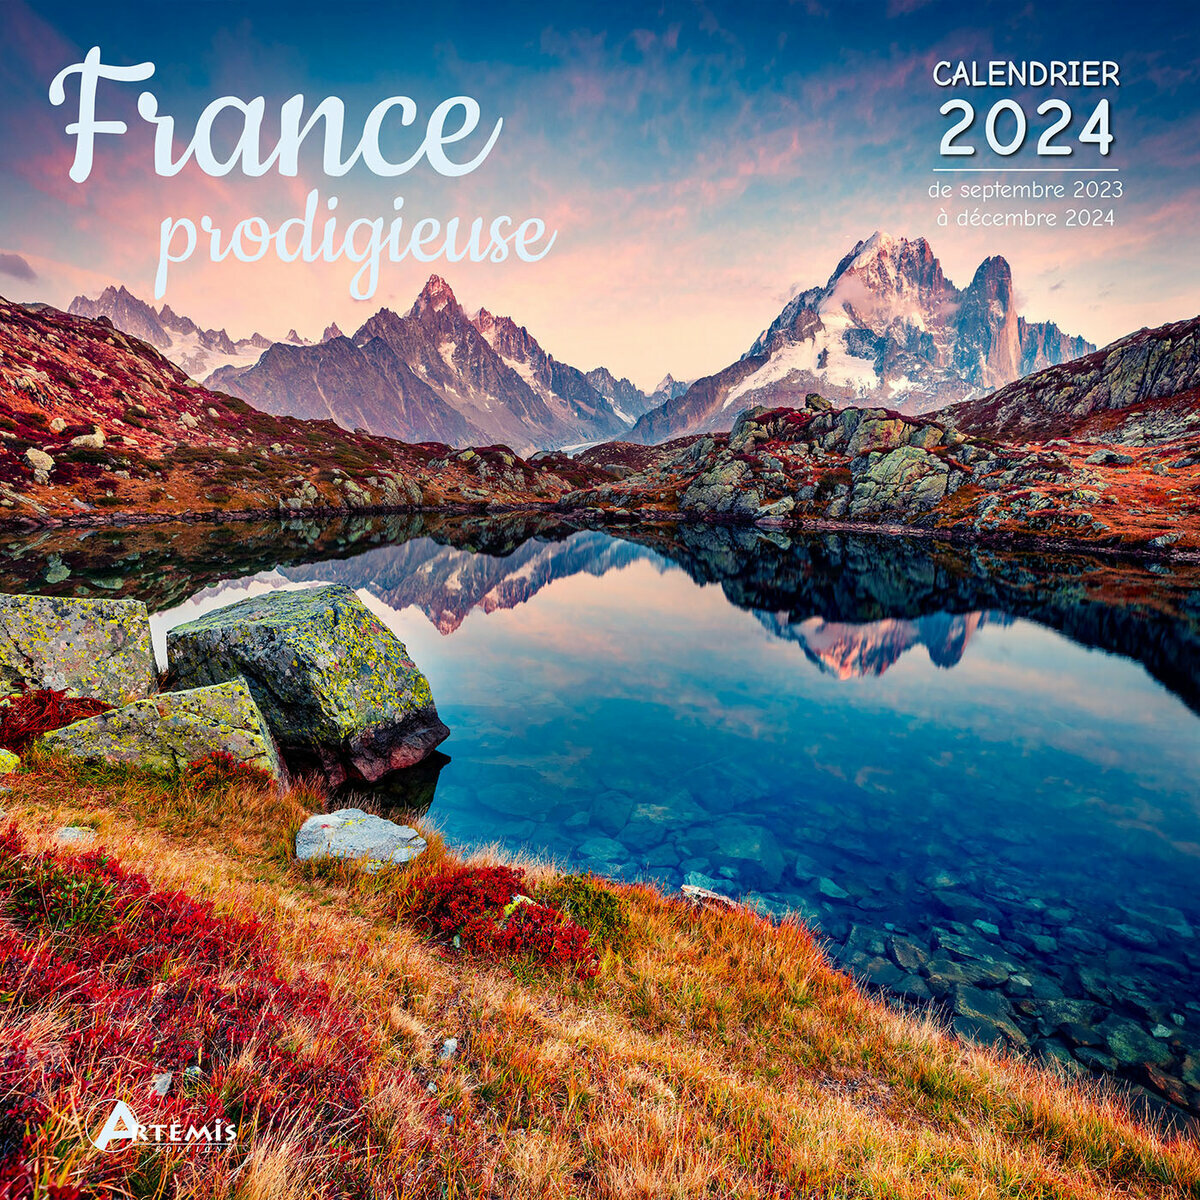 Calendrier de l'année 2024  Agenda Français 2024 by digital well